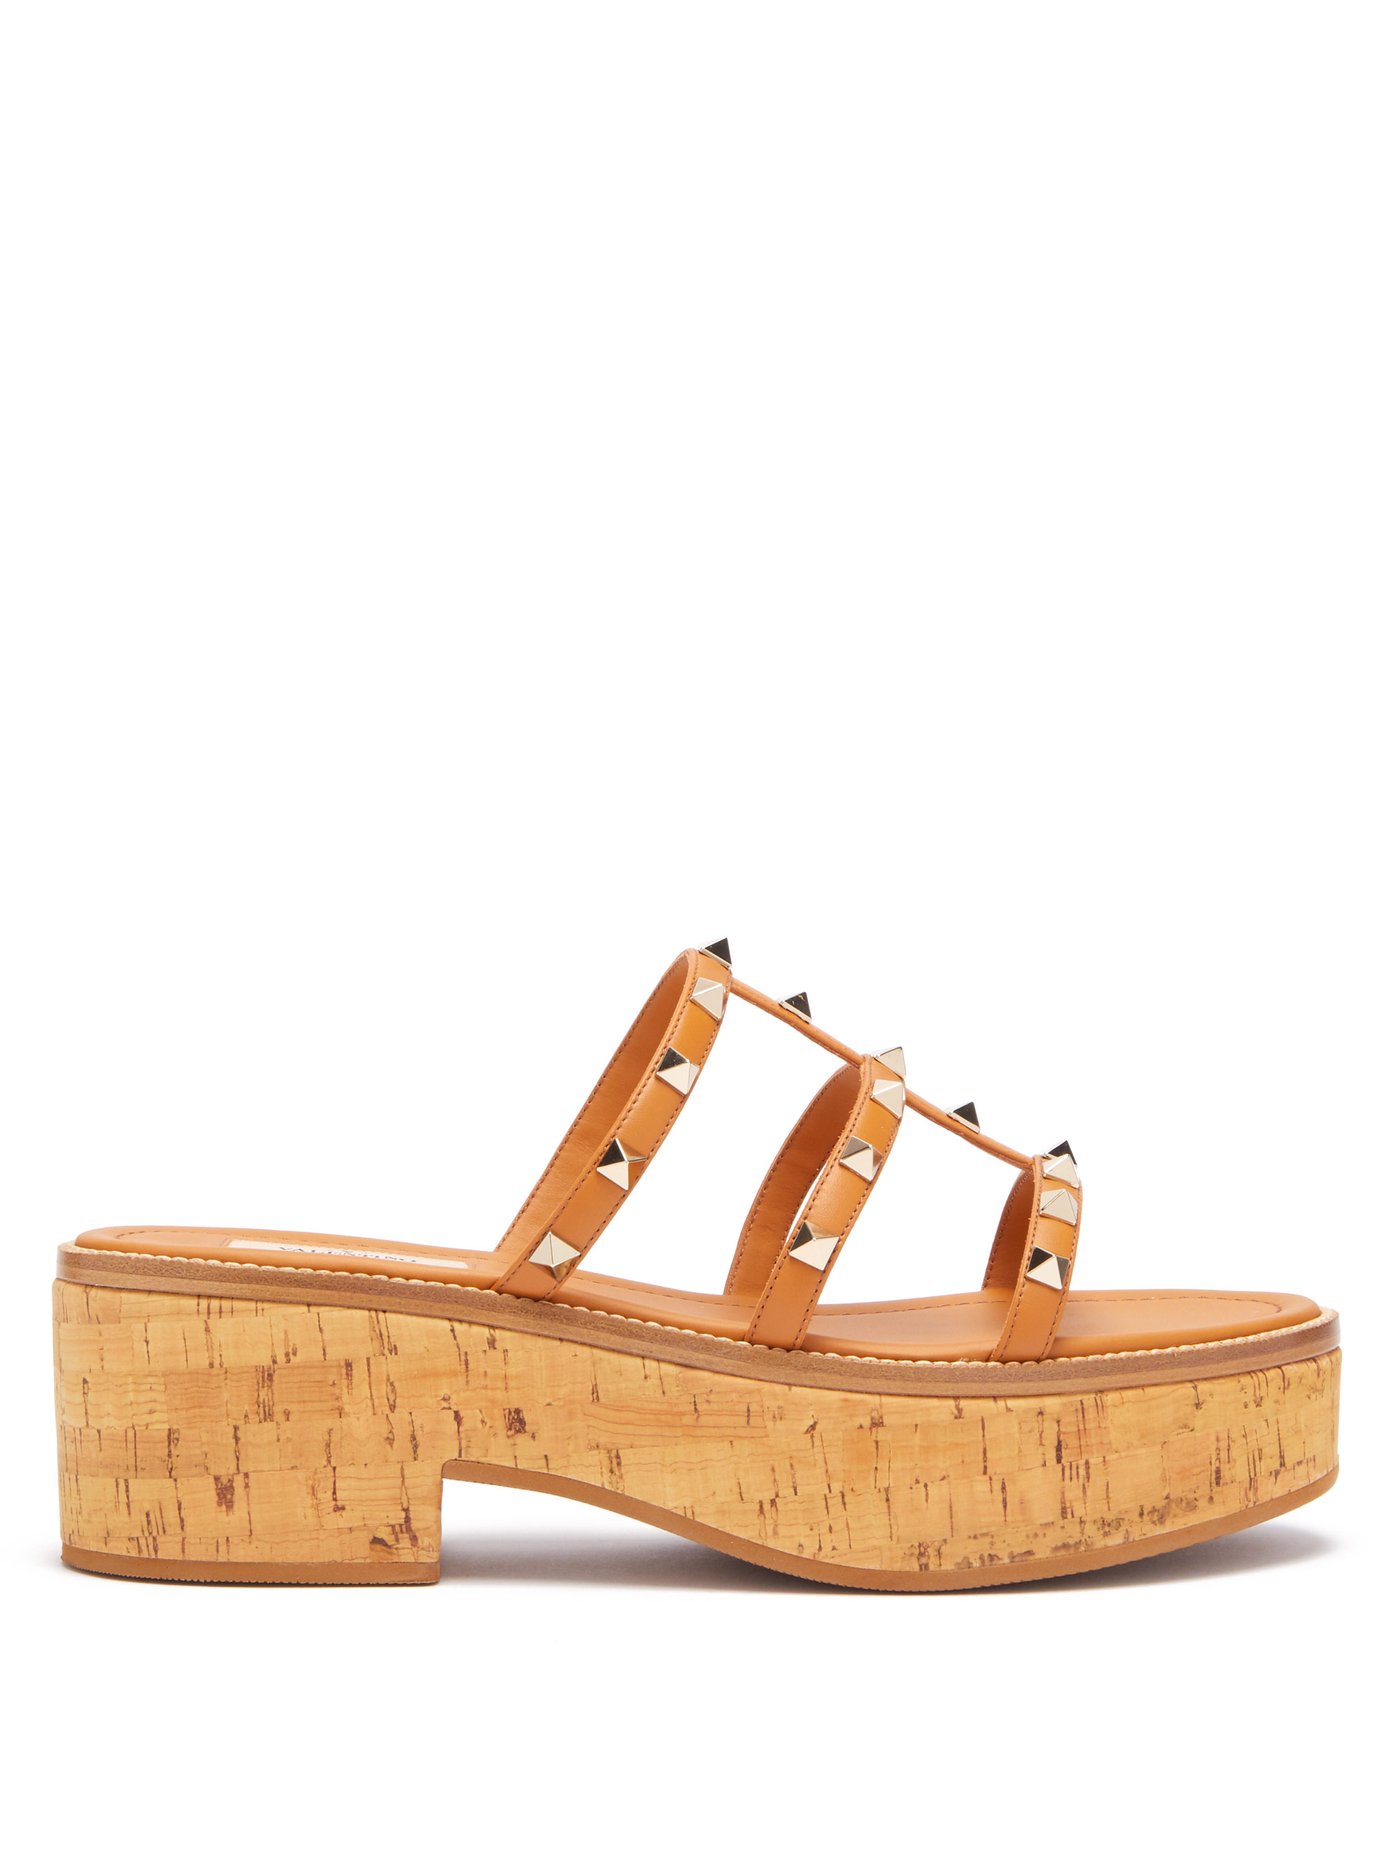 cork sandals platform